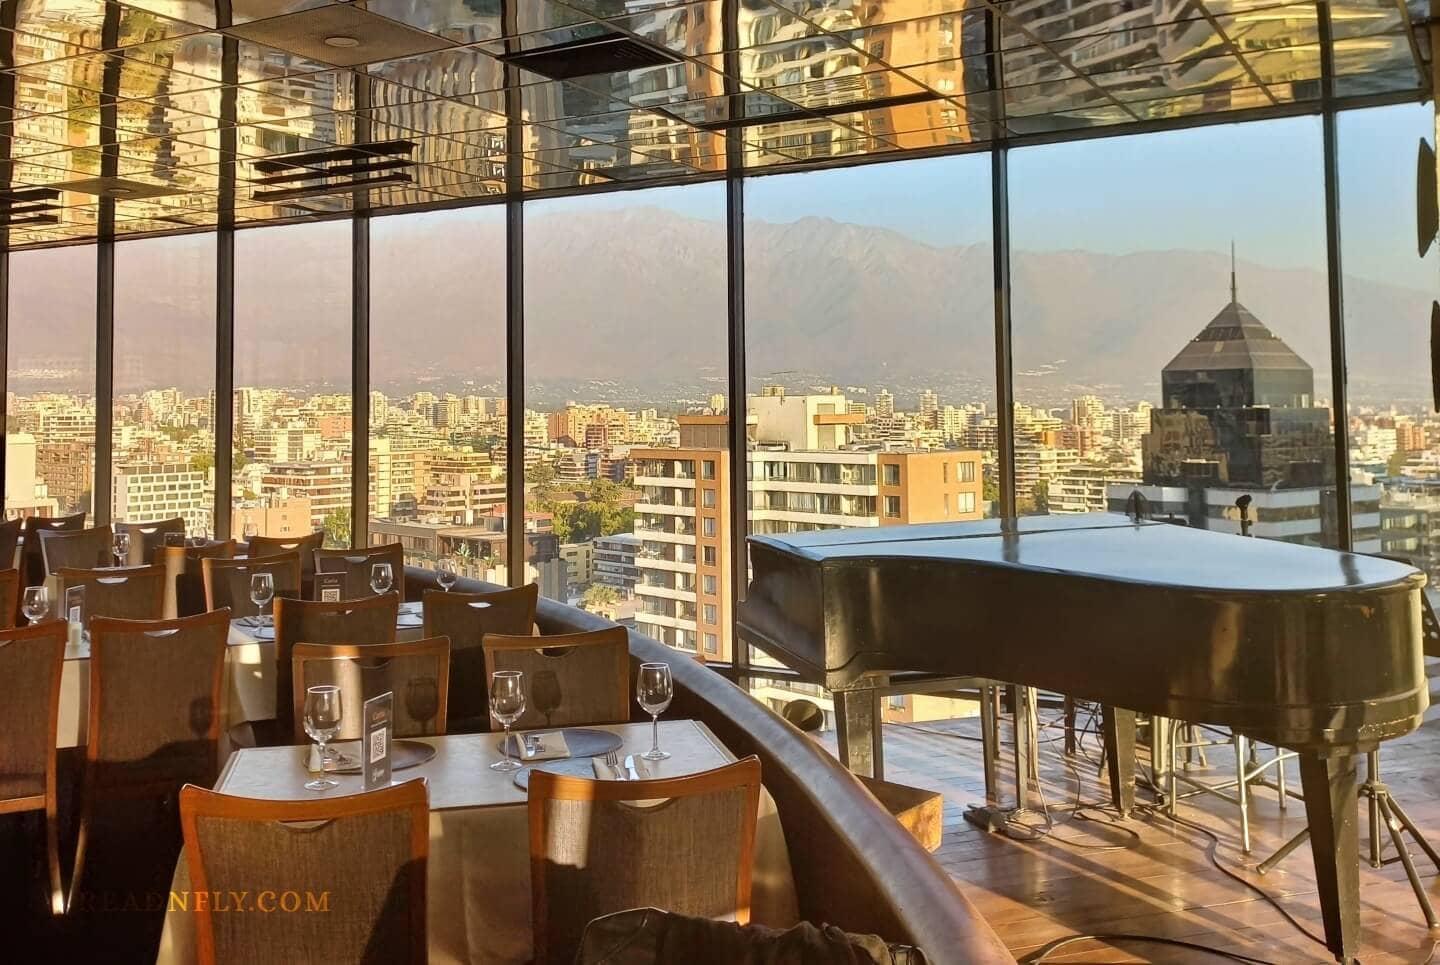 Restaurantes en Chile: el Giratorio de Santiago